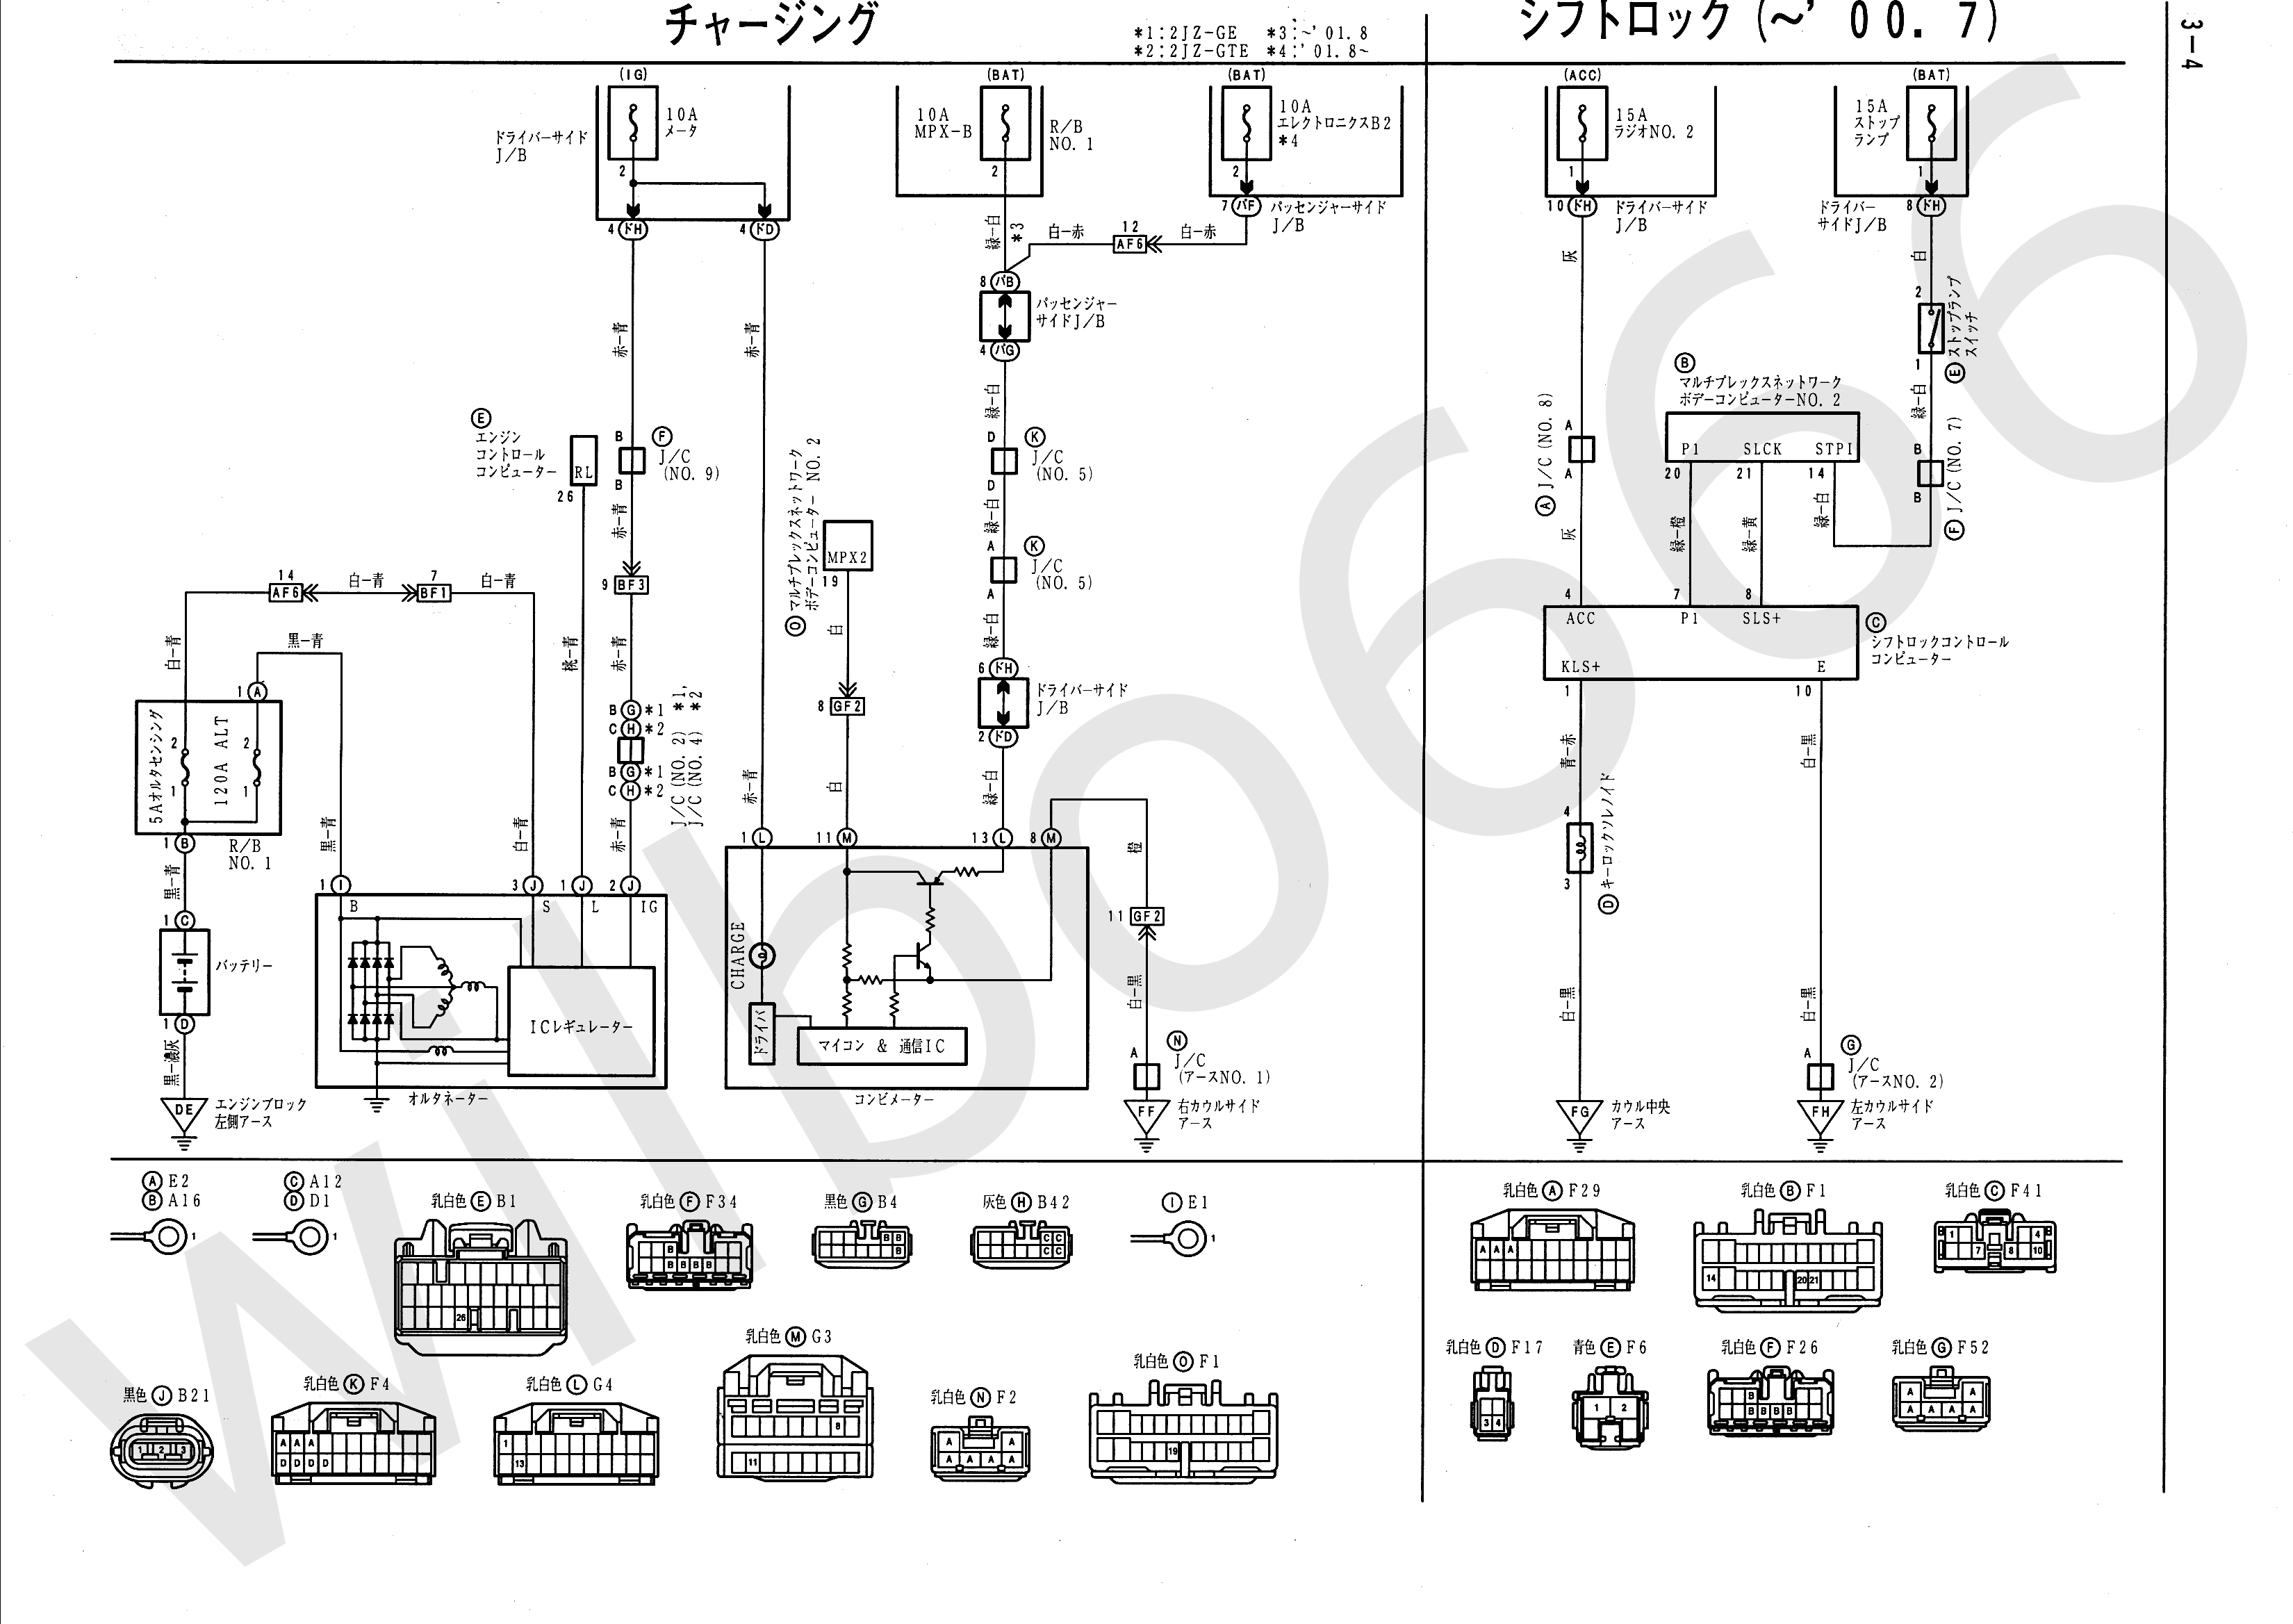 Wilbo666 / 2Jz-Gte Vvti Jzs161 Aristo Engine Wiring - Pressure Switch Wiring Diagram